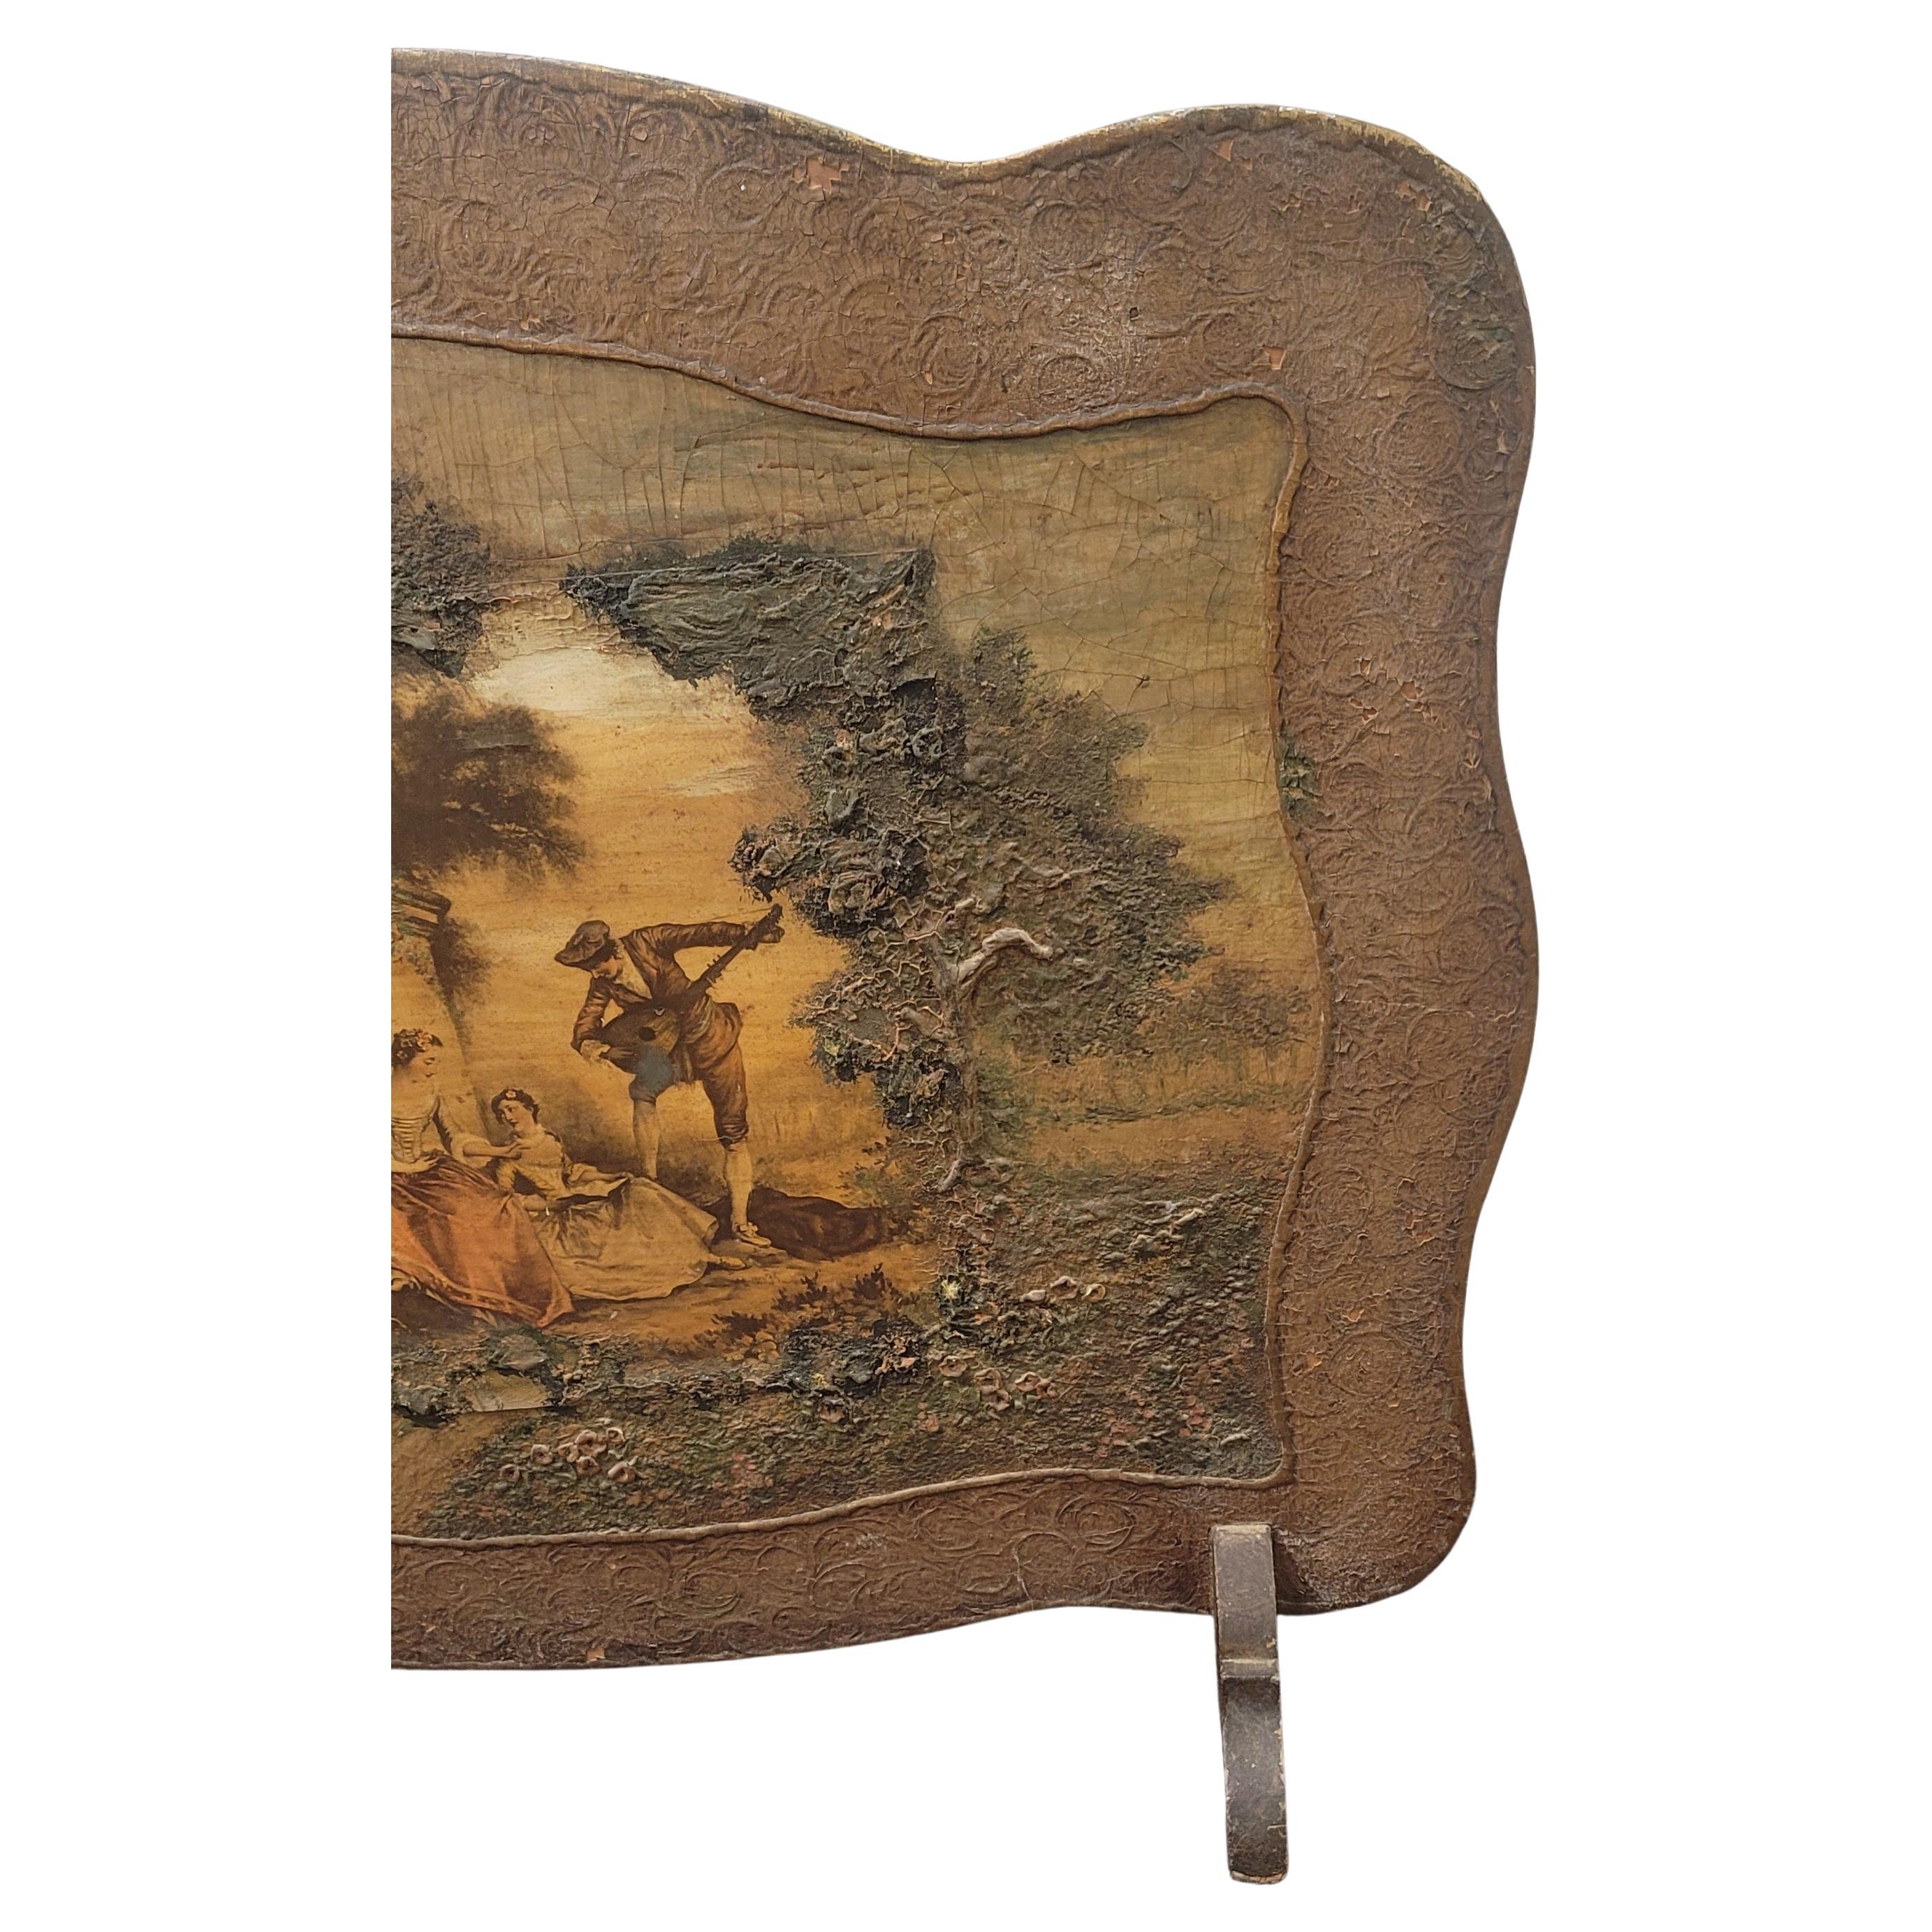 Un magnifique écran de cheminée peint à la main. Peinture à la main en relief sur bois massif. 
Circa les années 1920. Mesure 40,5 pouces de largeur, 10,5 pouces de profondeur et 34,75 pouces de hauteur